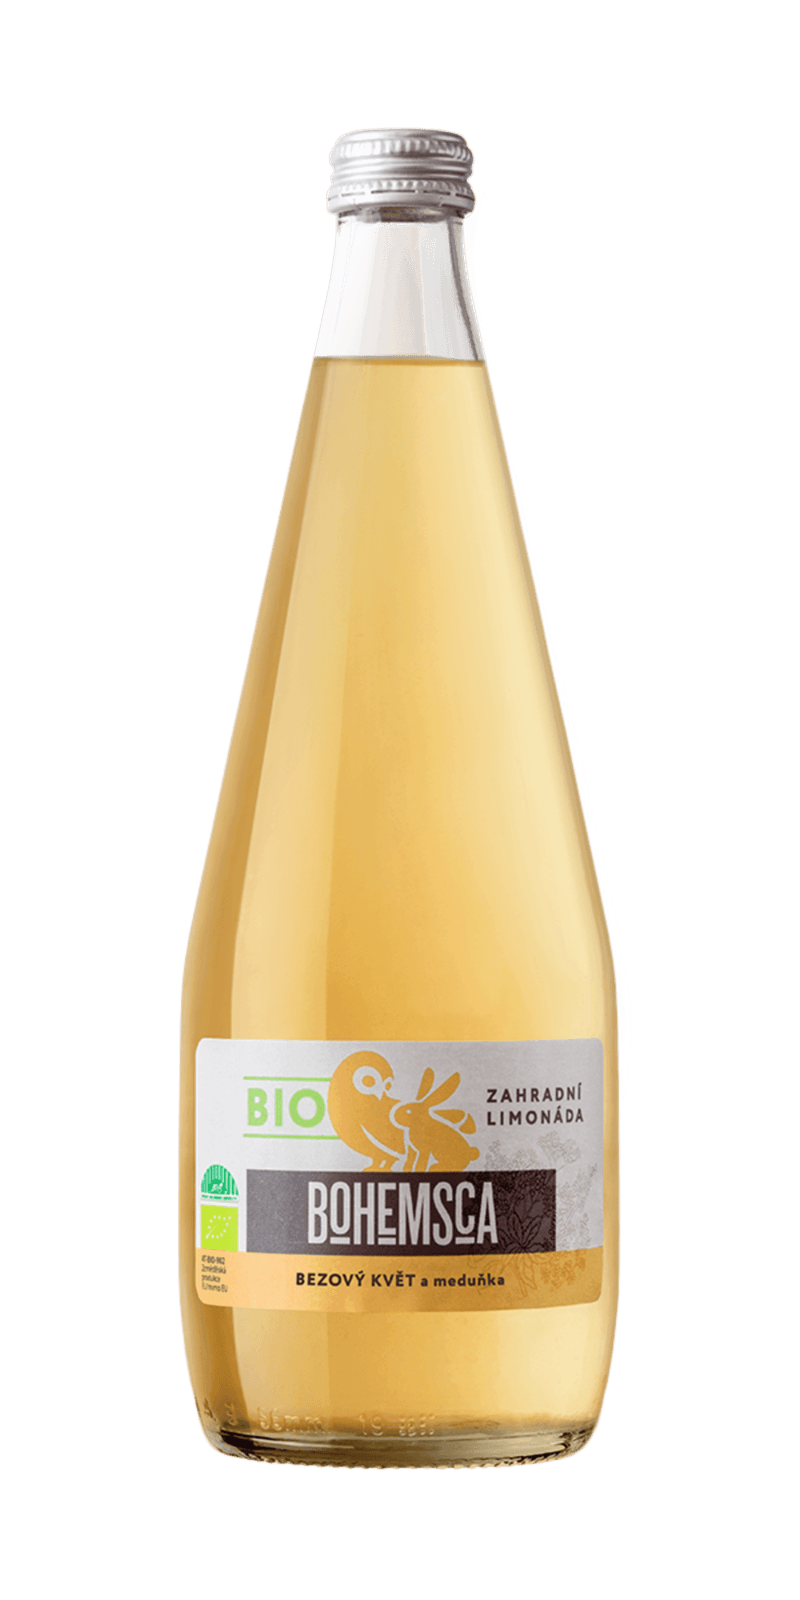 Bohemsca BIO Zahradní limonáda Bezový květ a meduňka 700 ml expirace